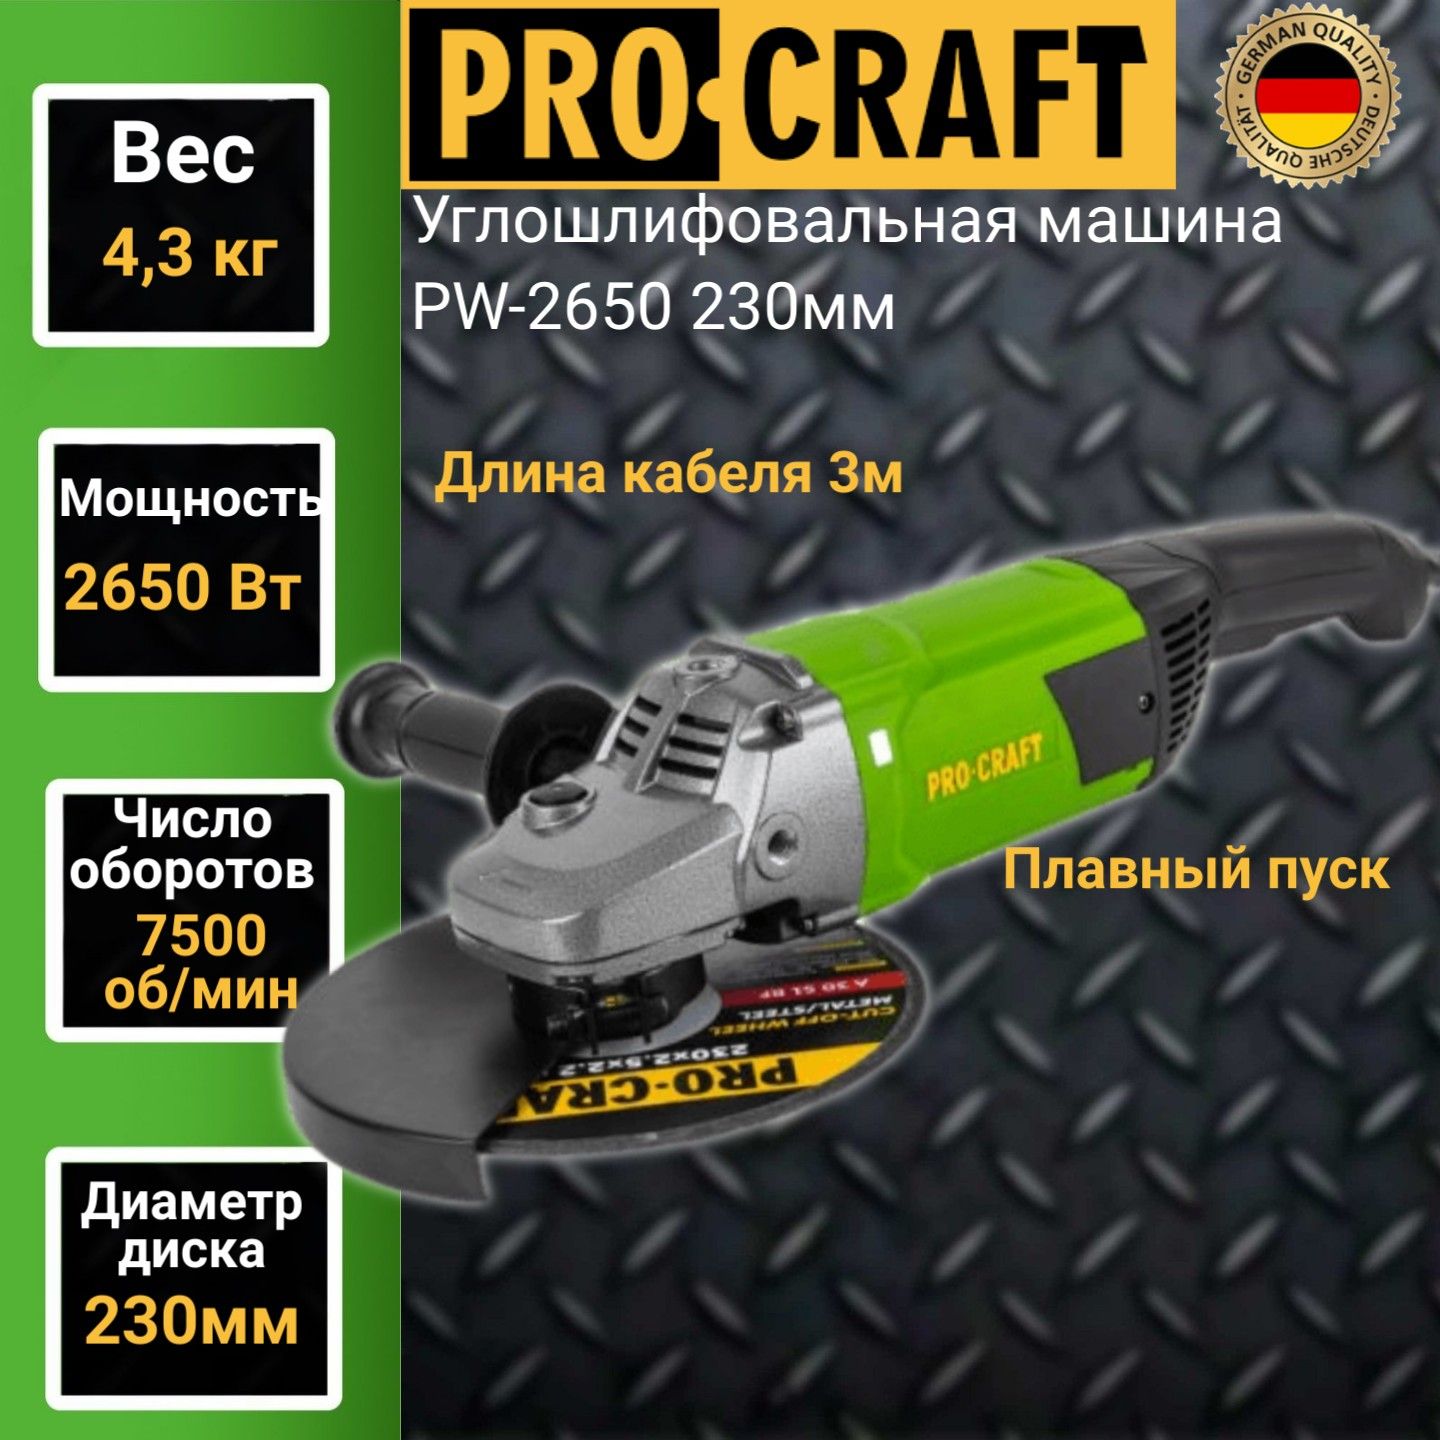 Углошлифовальная машина болгарка Procraft PW 2650, 230мм круг, 2650Вт, 7500об/мин угловая шлифовальная машина modeco expert mn 93 039 230мм 2350вт